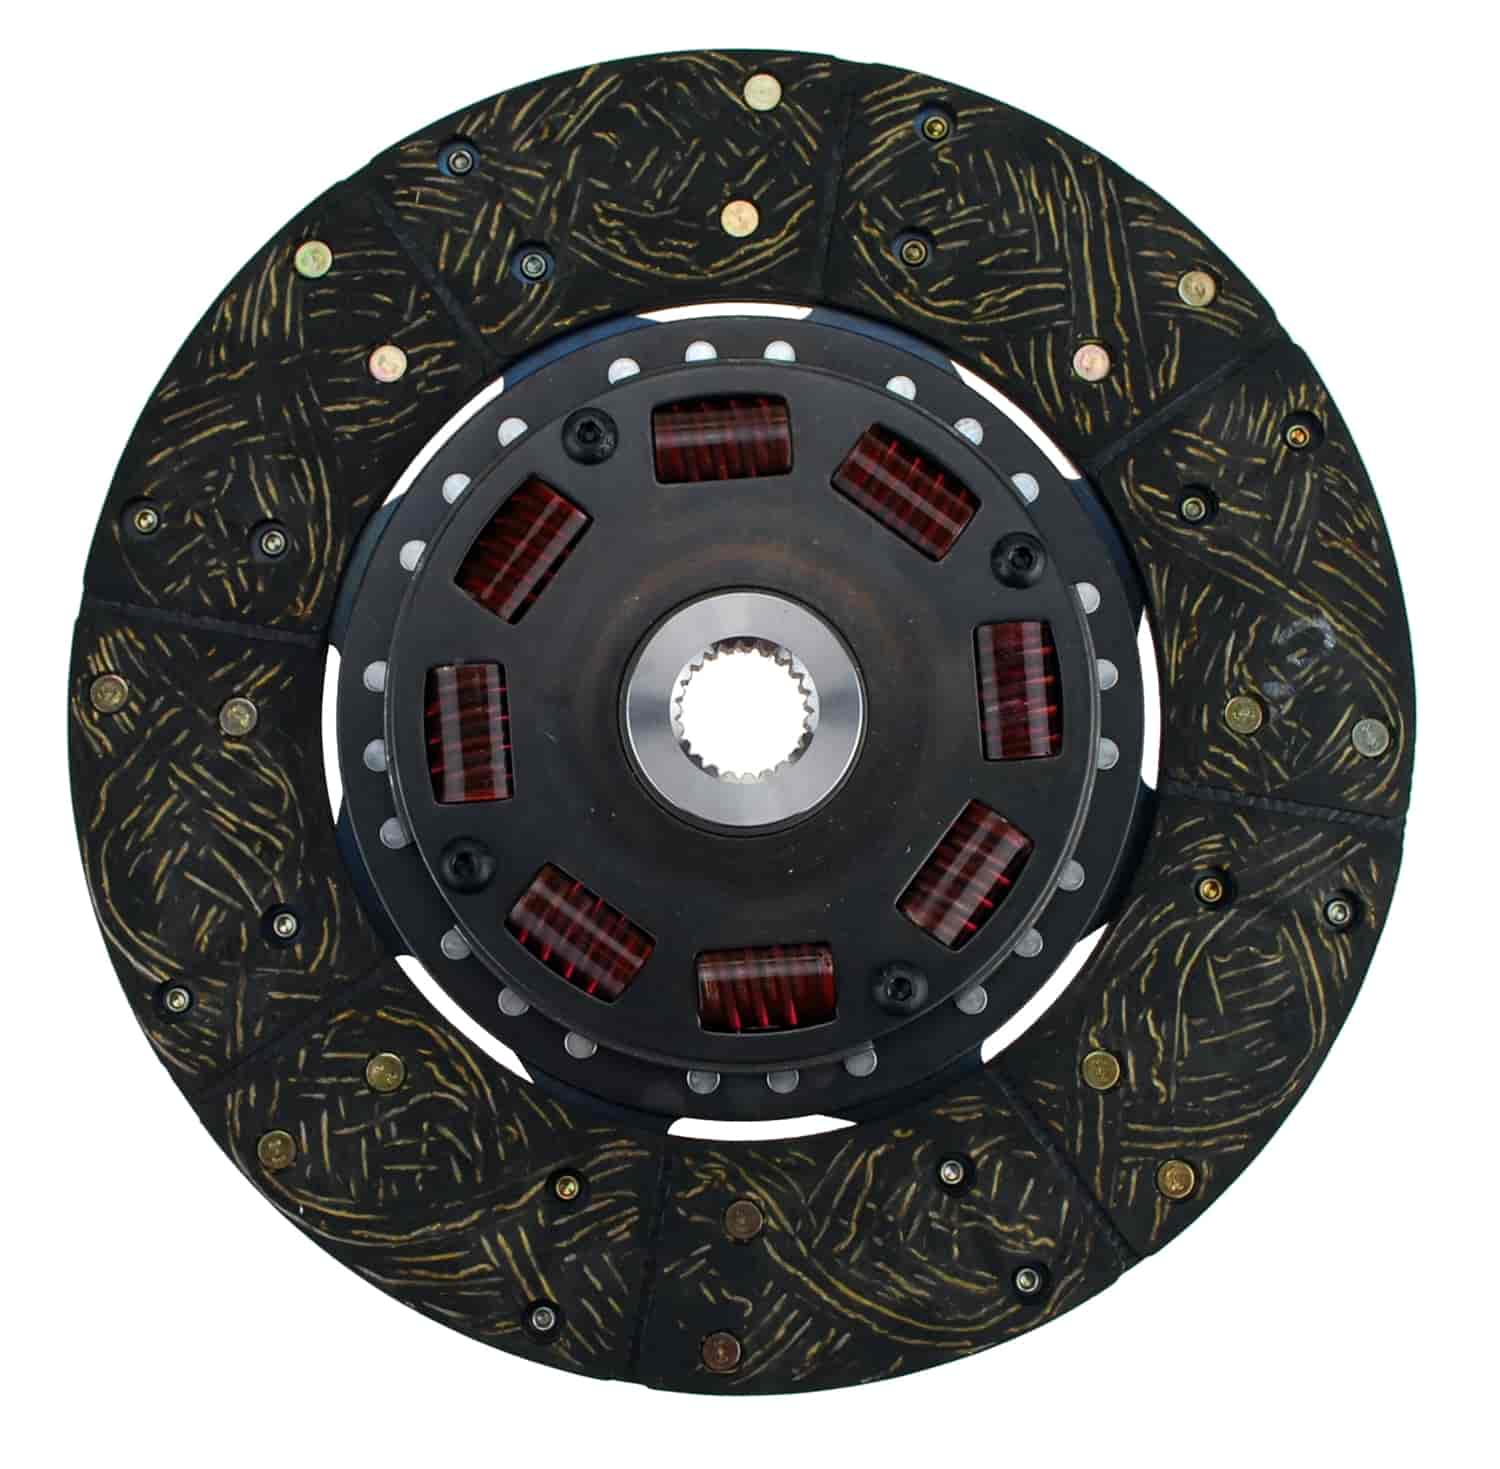 300 Series Sprung Center Clutch Disc 11" Diameter